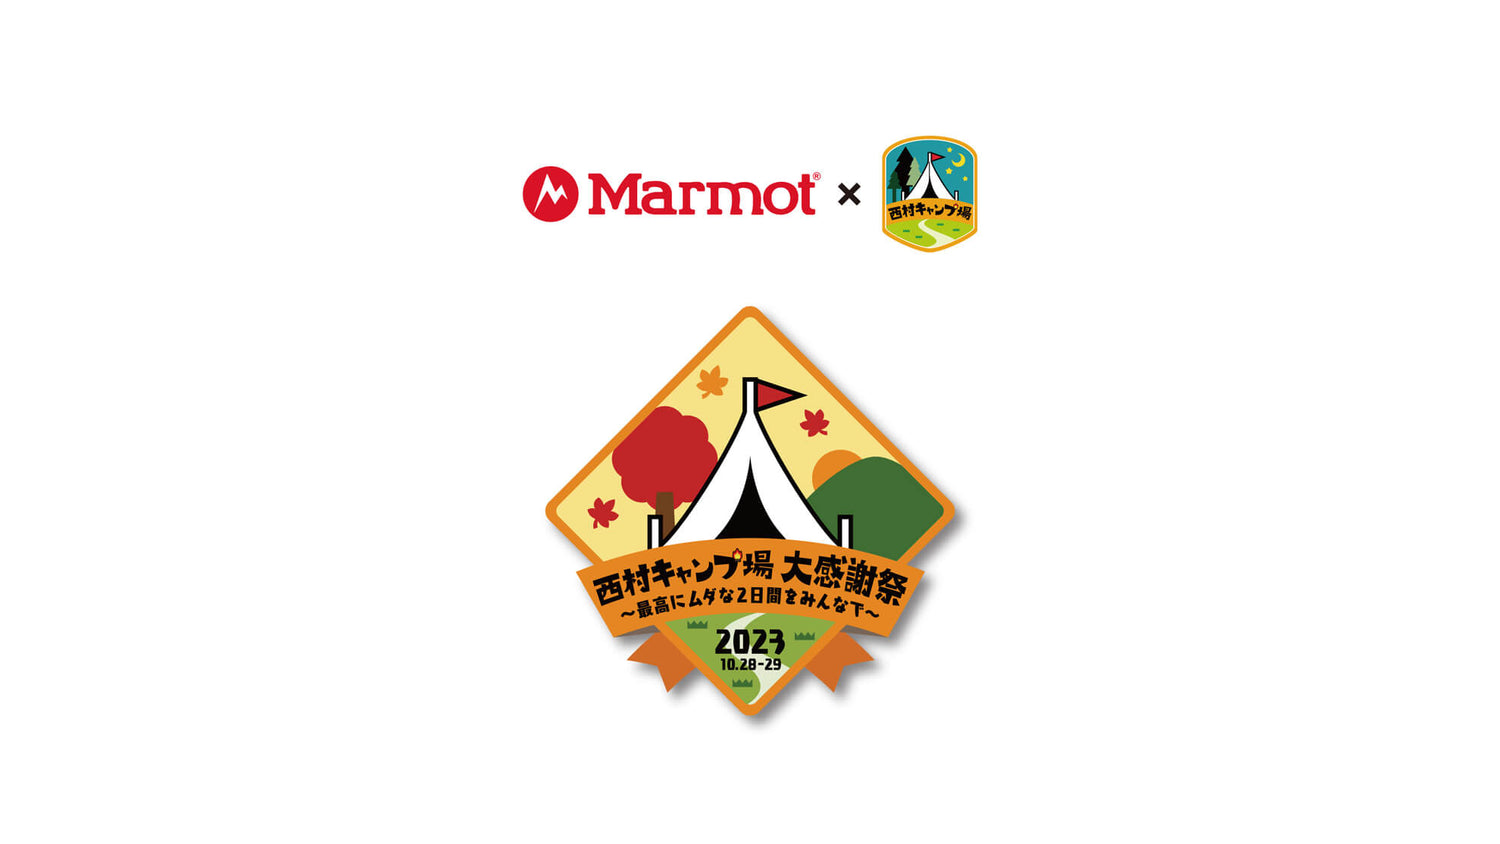 「Marmot x 西村キャンプ場」コラボレーションアイテム発売